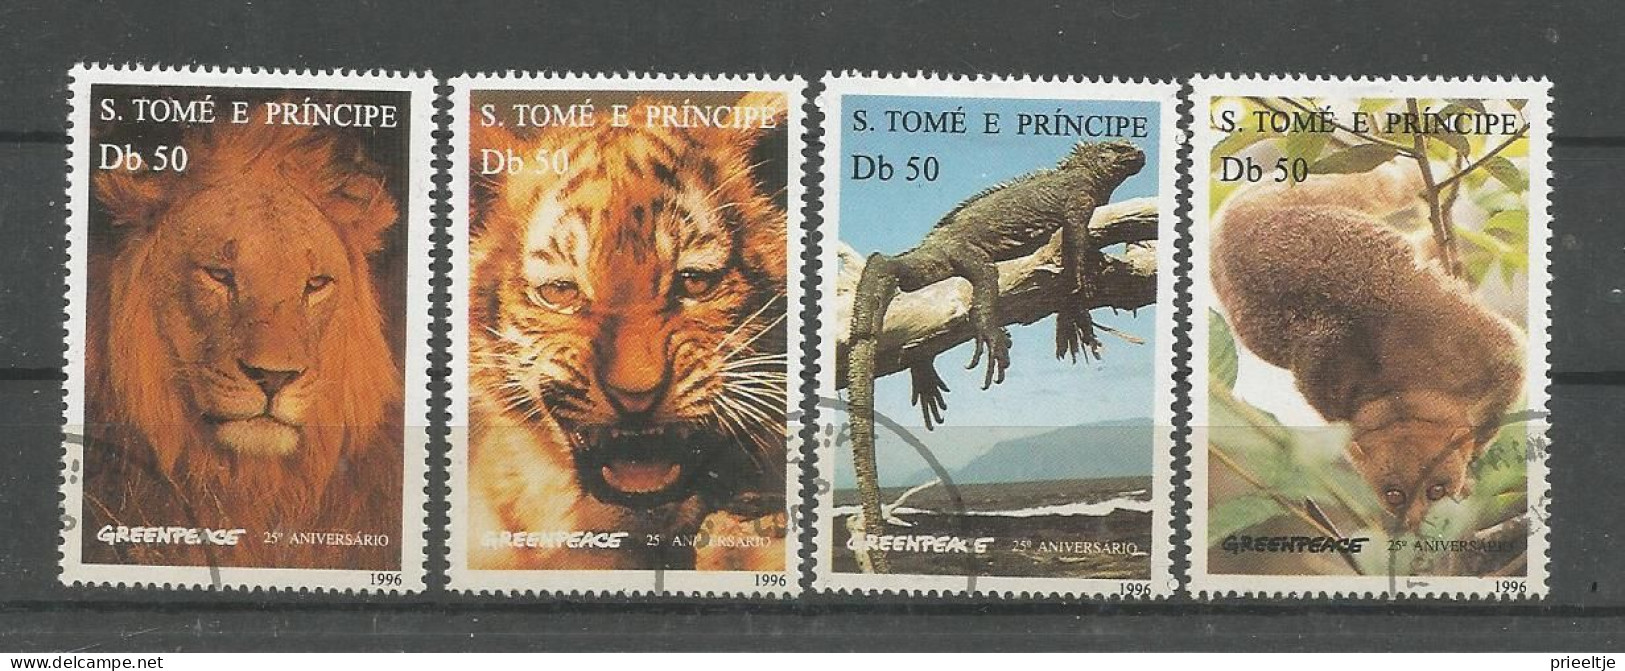 St Tome E Principe 1996 Greenpeace 25th Anniv. Y.T. 1264CQ/CT (0) - Sao Tome And Principe